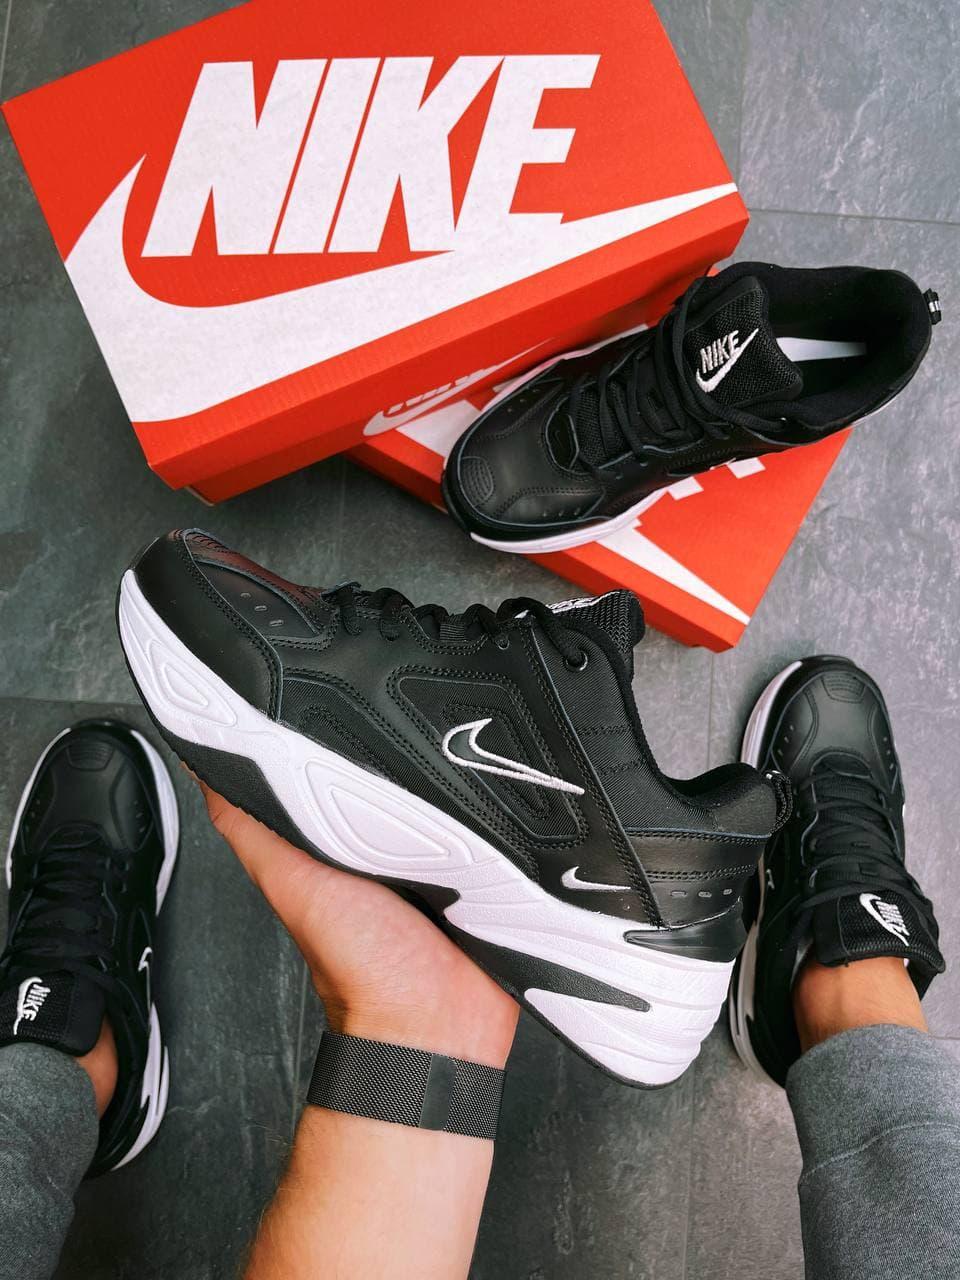 

Мужские кроссовки Nike M2K Tekno Black Спортивные кожаные кроссы Найк м2к текно черные, Черный